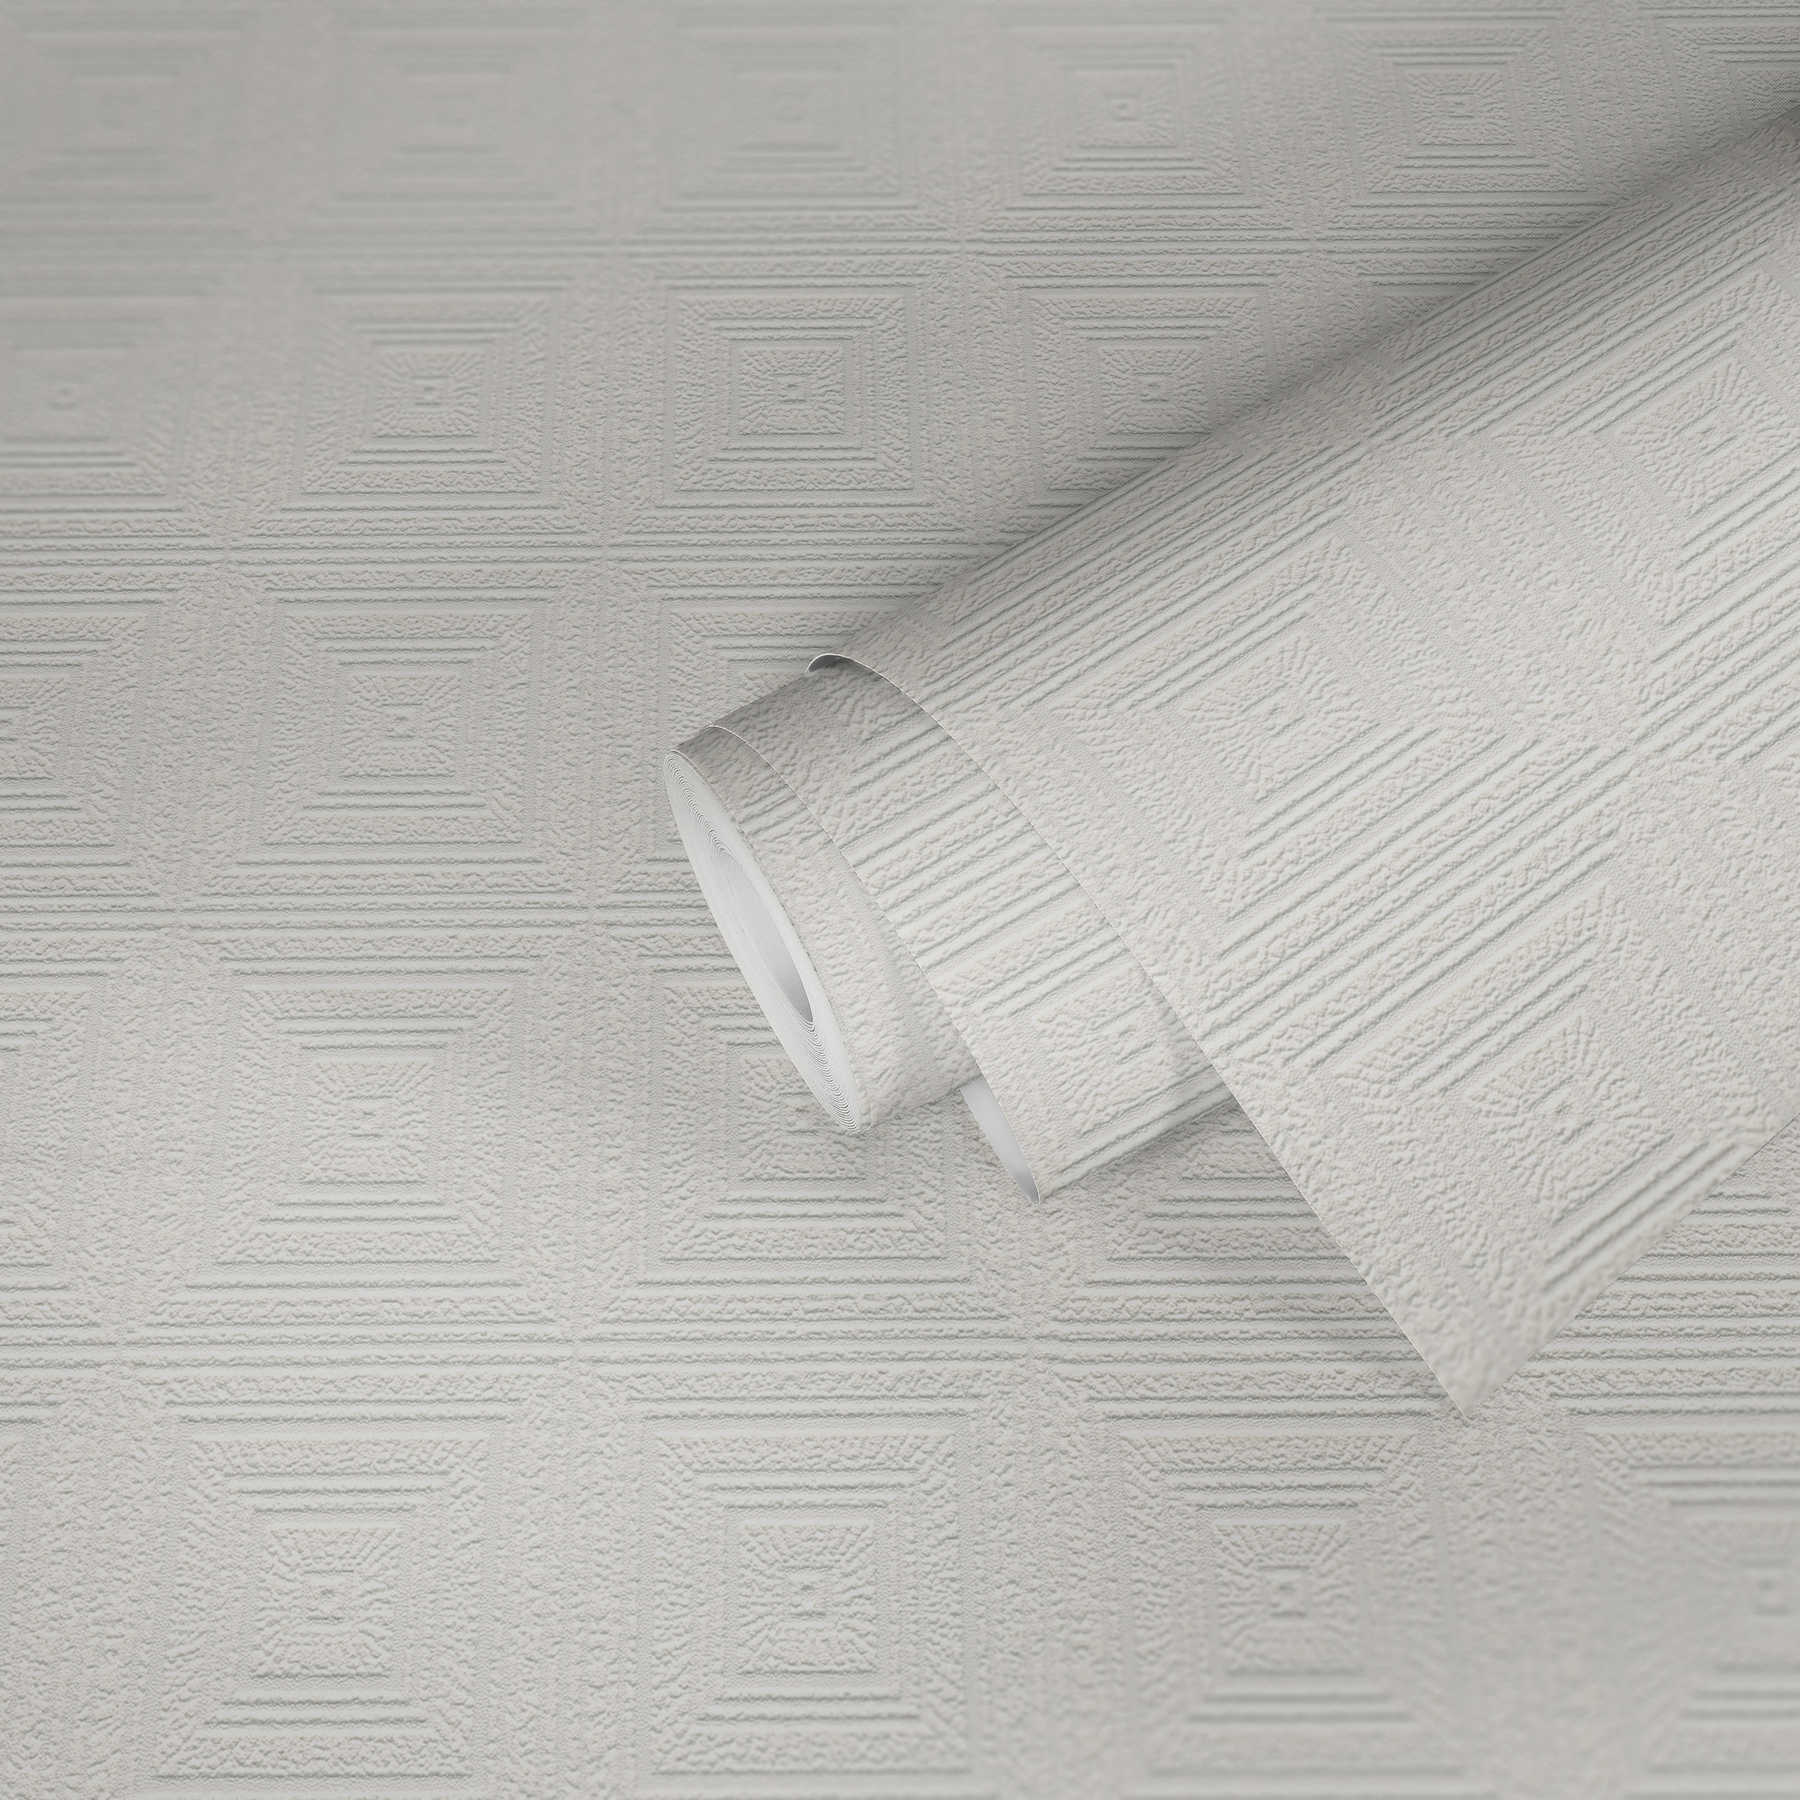             Papel pintado decorado cassettes efecto textura & aspecto escayola - blanco
        